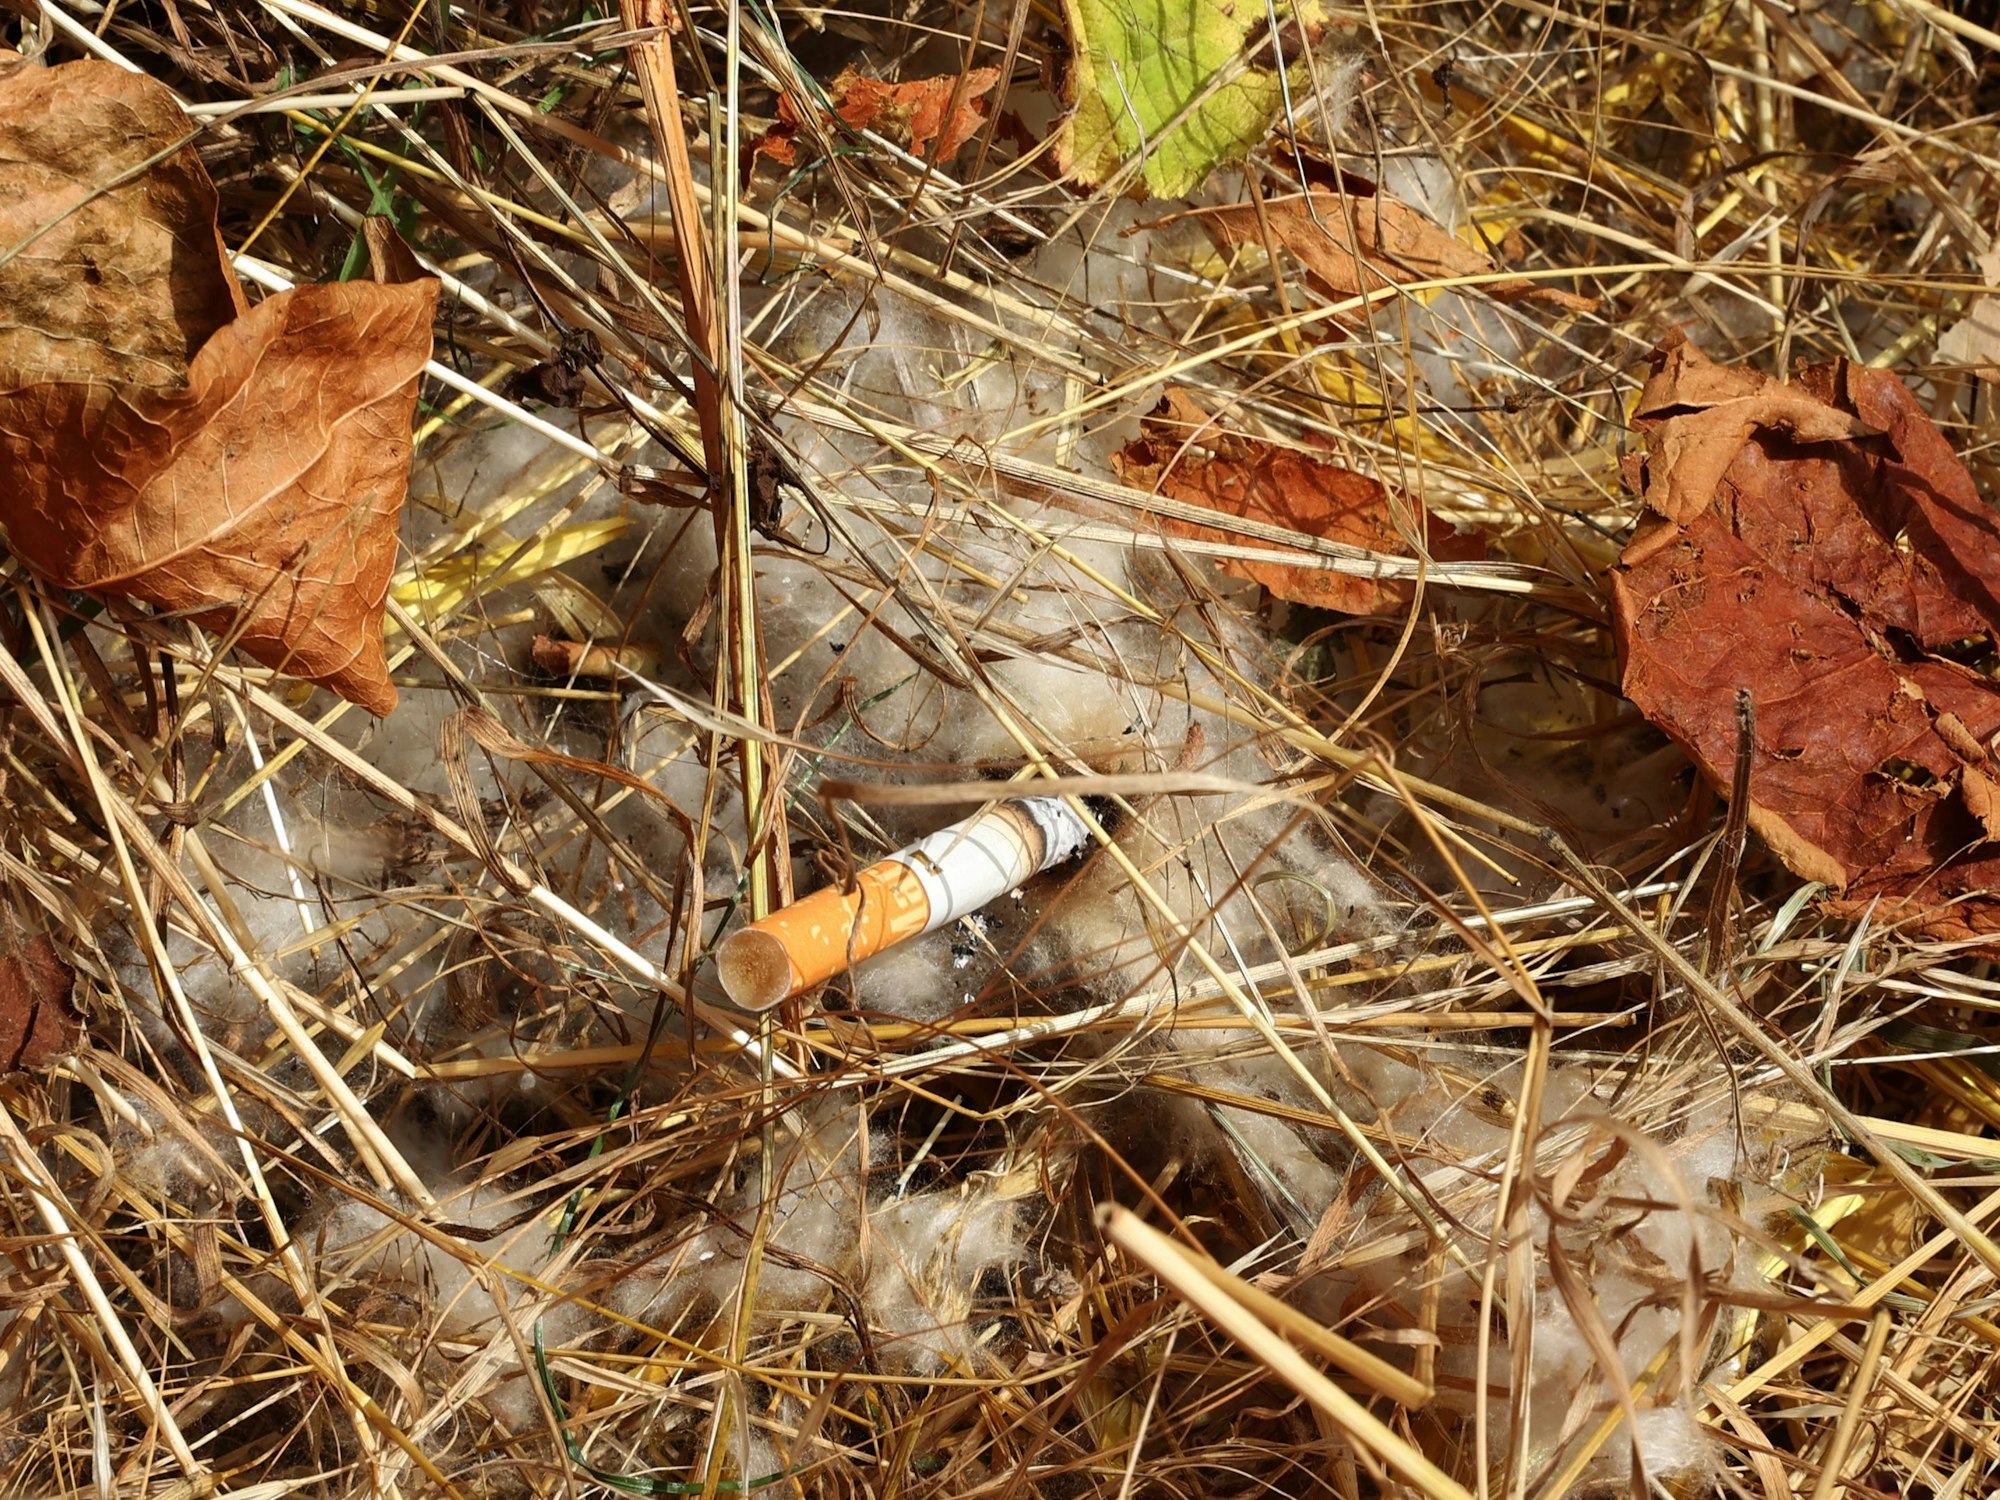 Eine Zigarette liegt auf dem Boden im Gestrüpp.